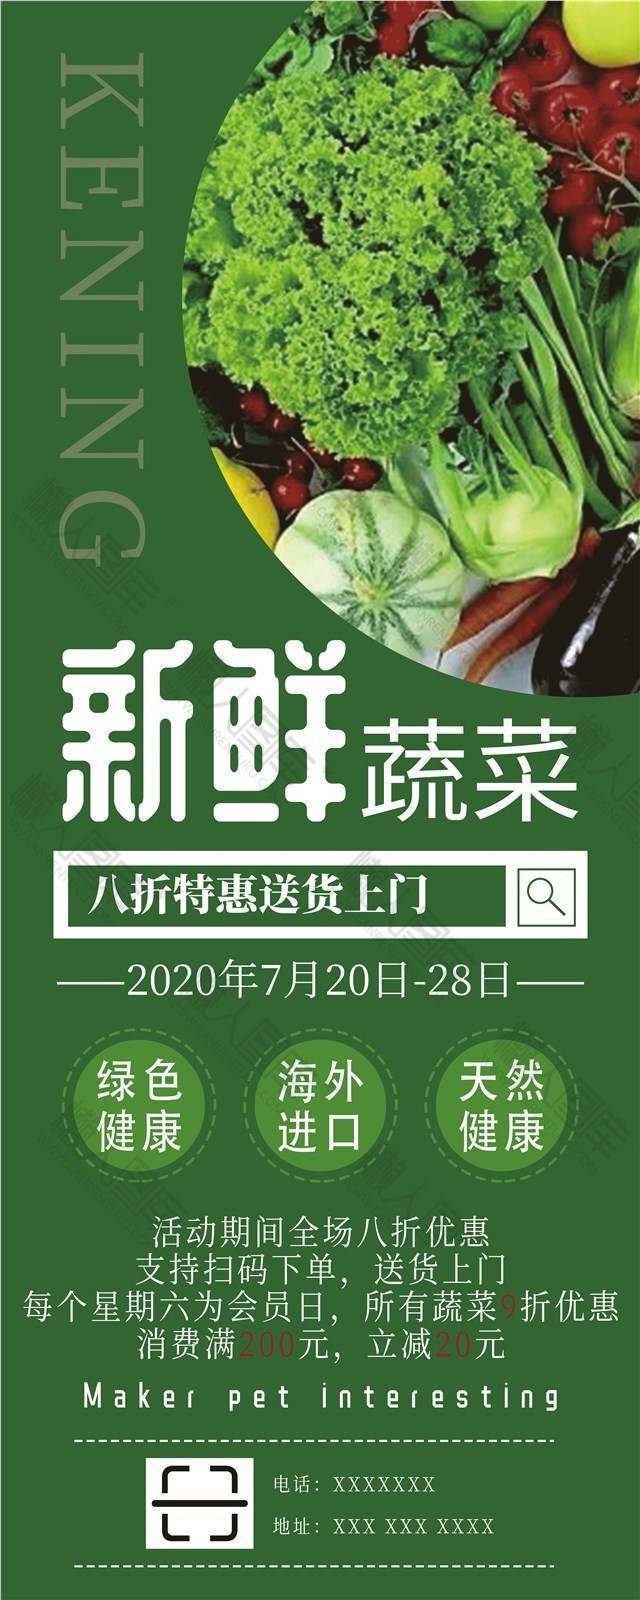 绿色纯天然果蔬超市促销海报